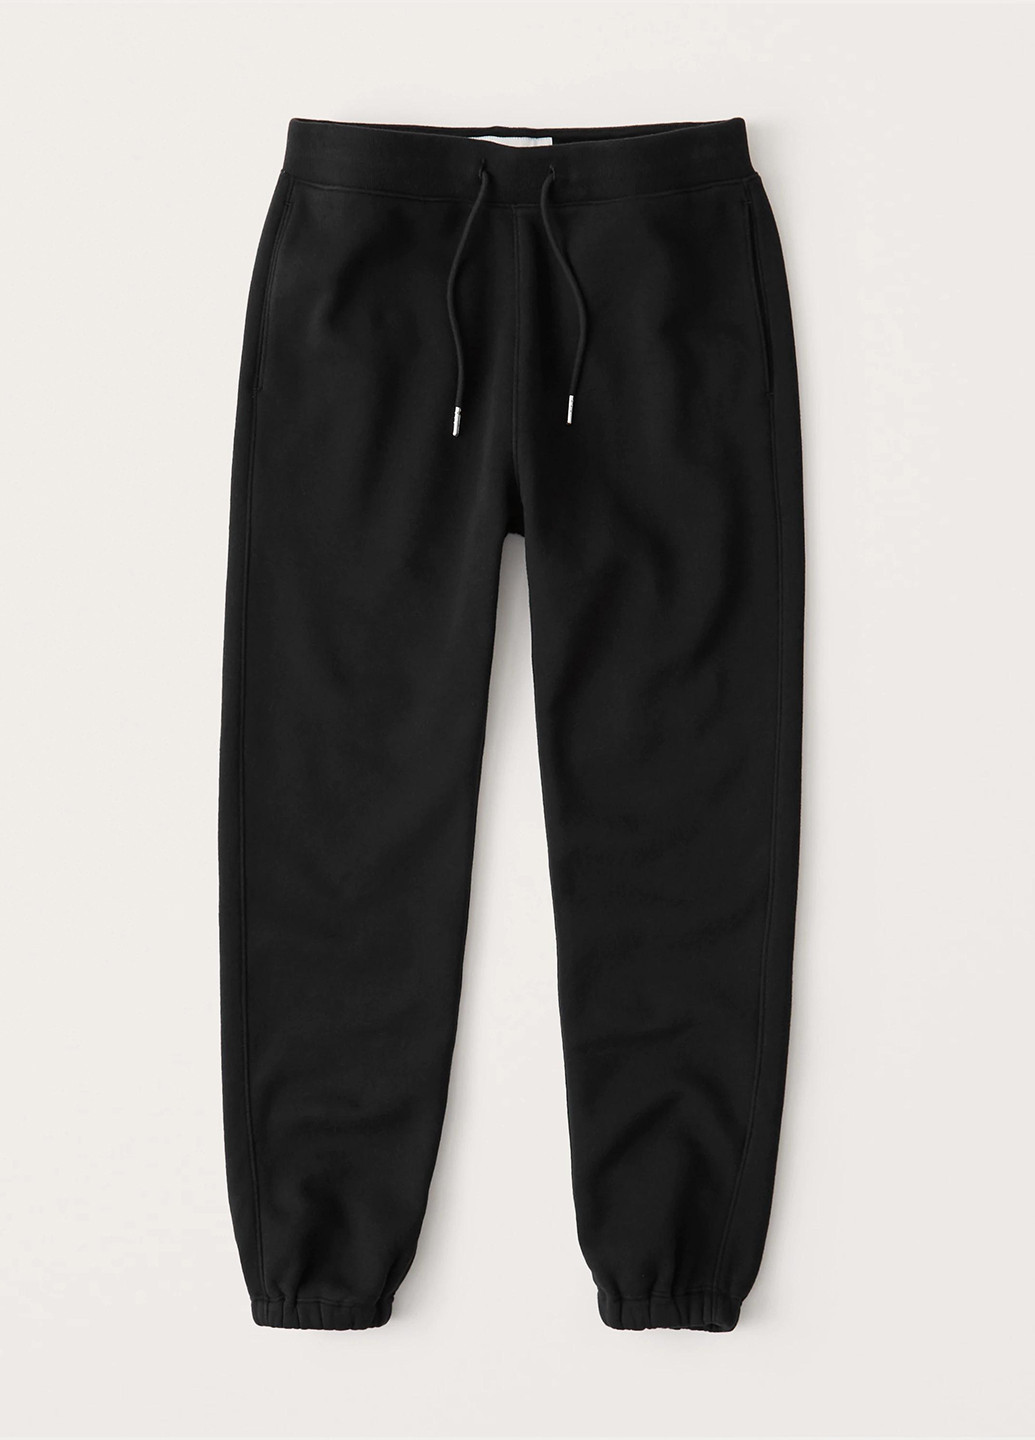 Черные спортивные демисезонные джоггеры брюки Abercrombie & Fitch